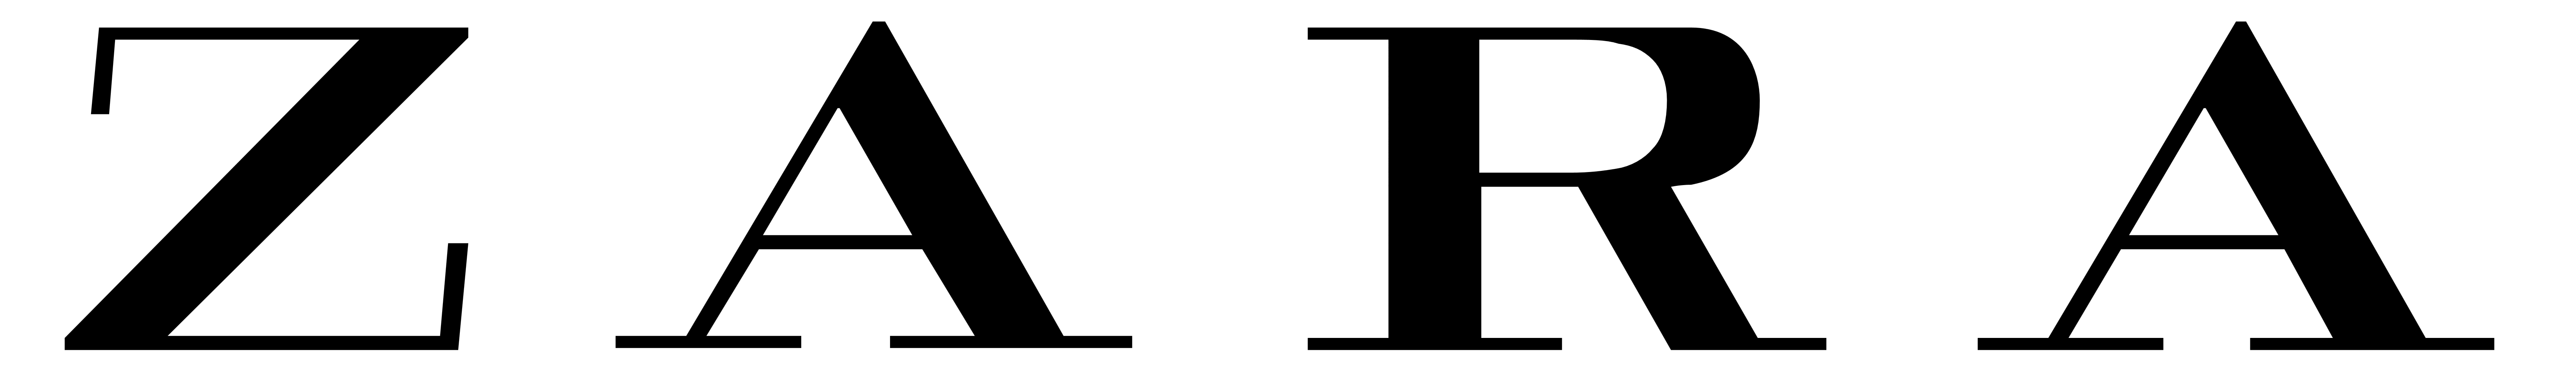 Zara logo, logotype